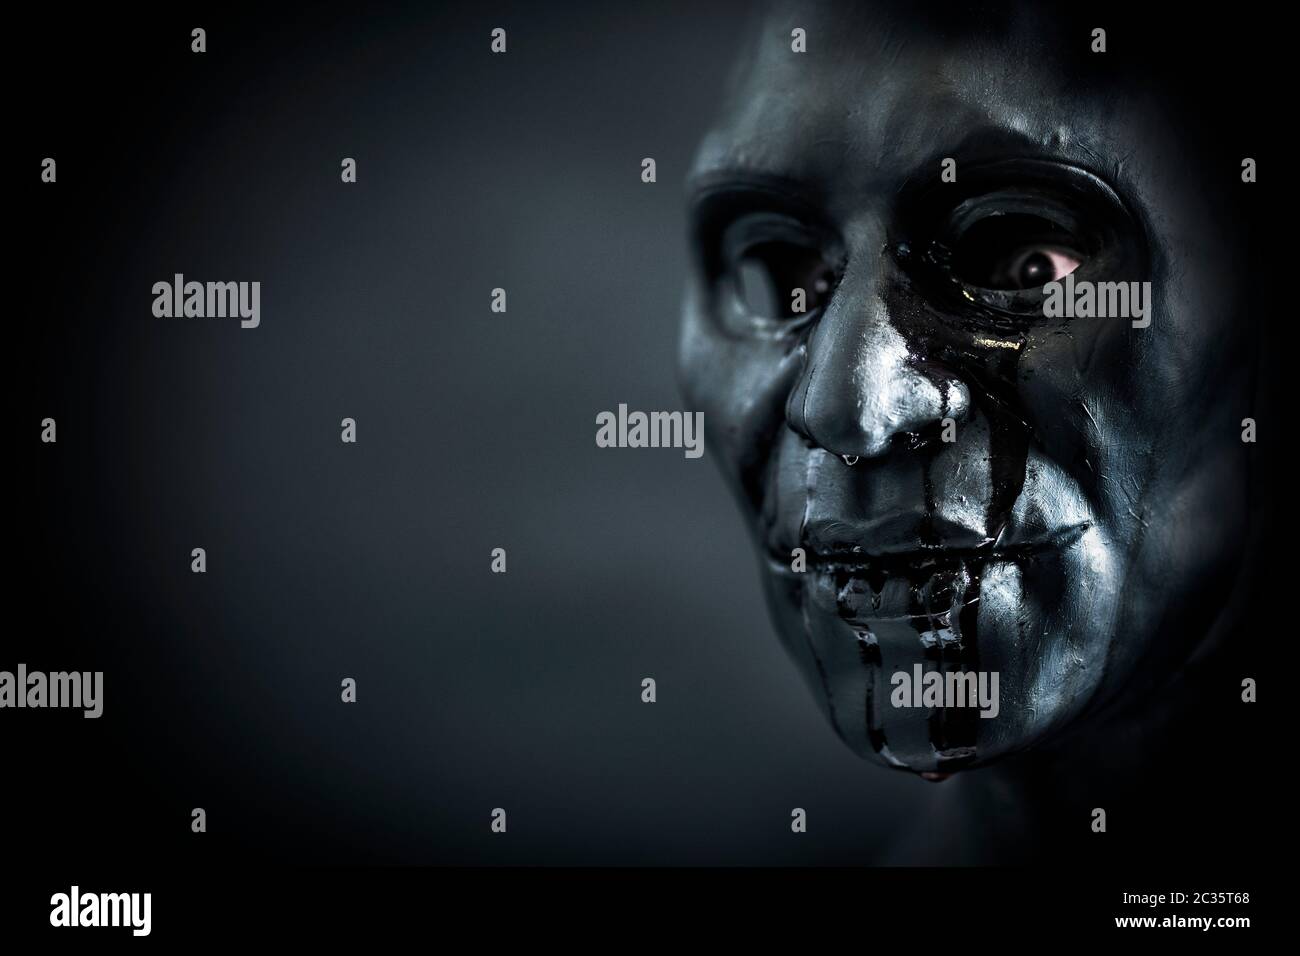 La figure effrayante creepy avec masque sanglant dans le noir Banque D'Images